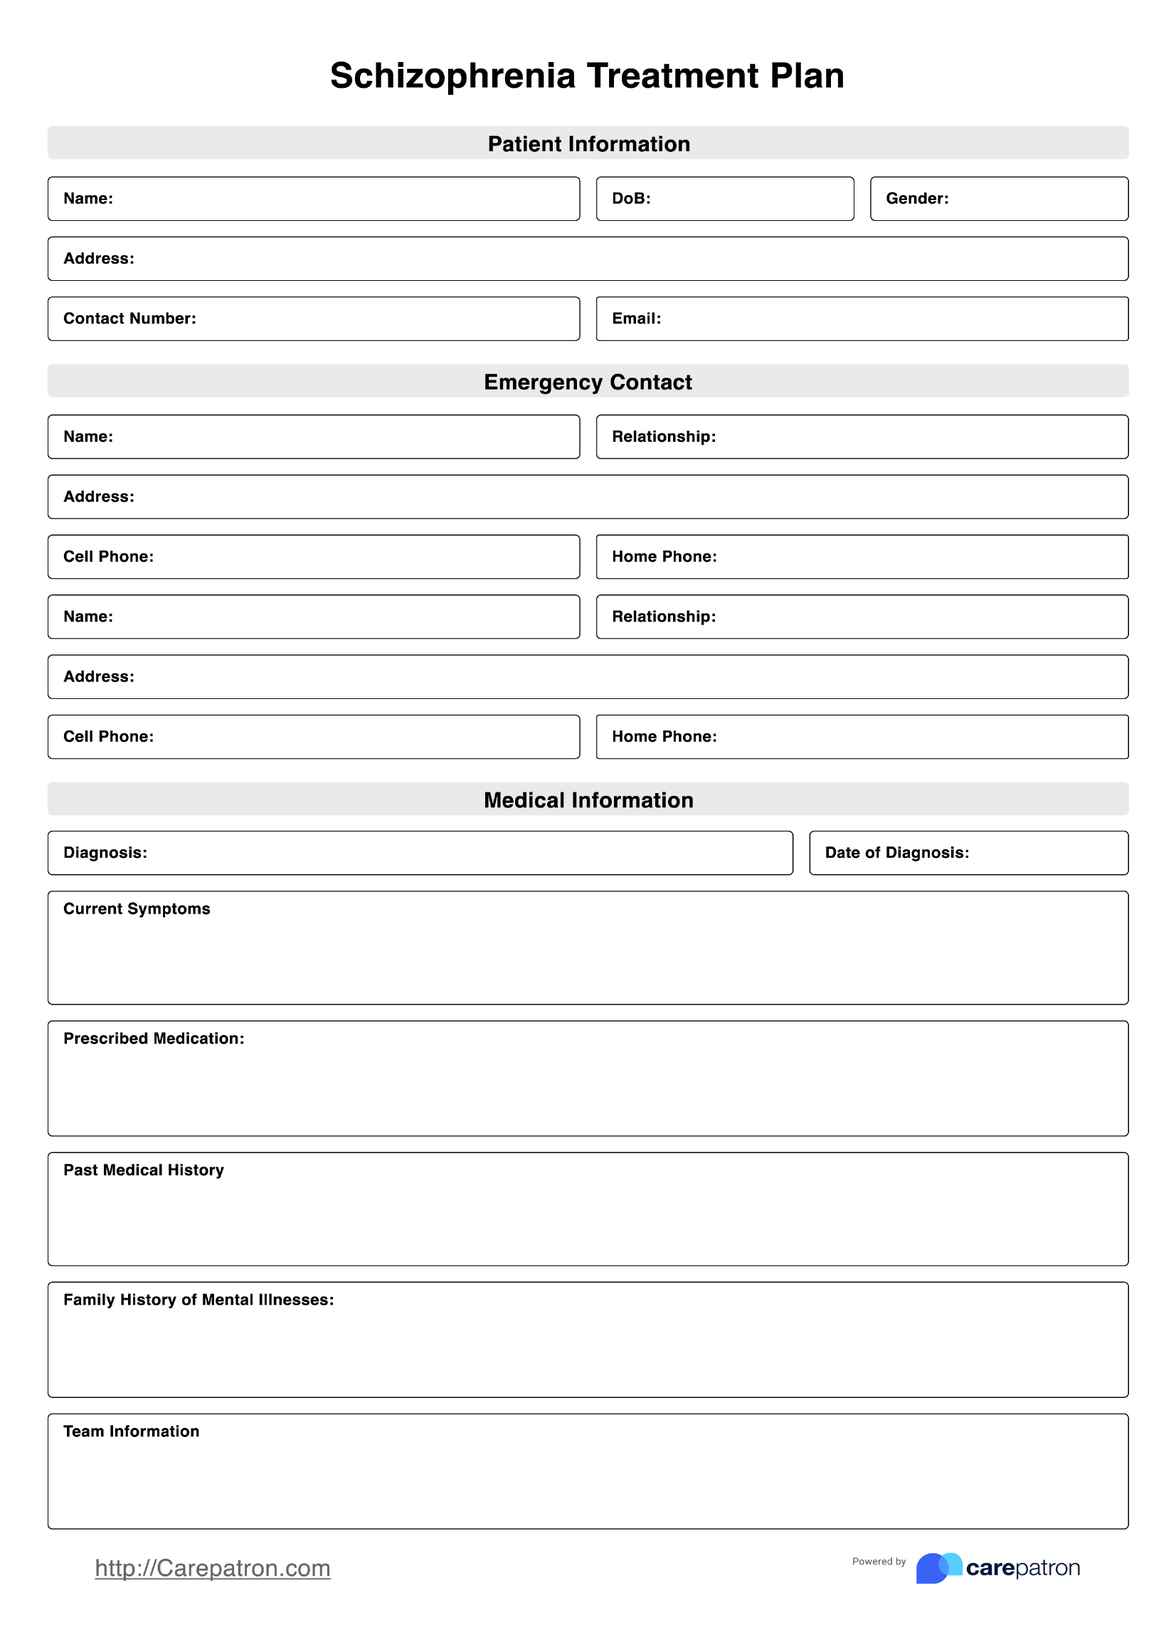 Schizophrenia Treatment Plan PDF Example